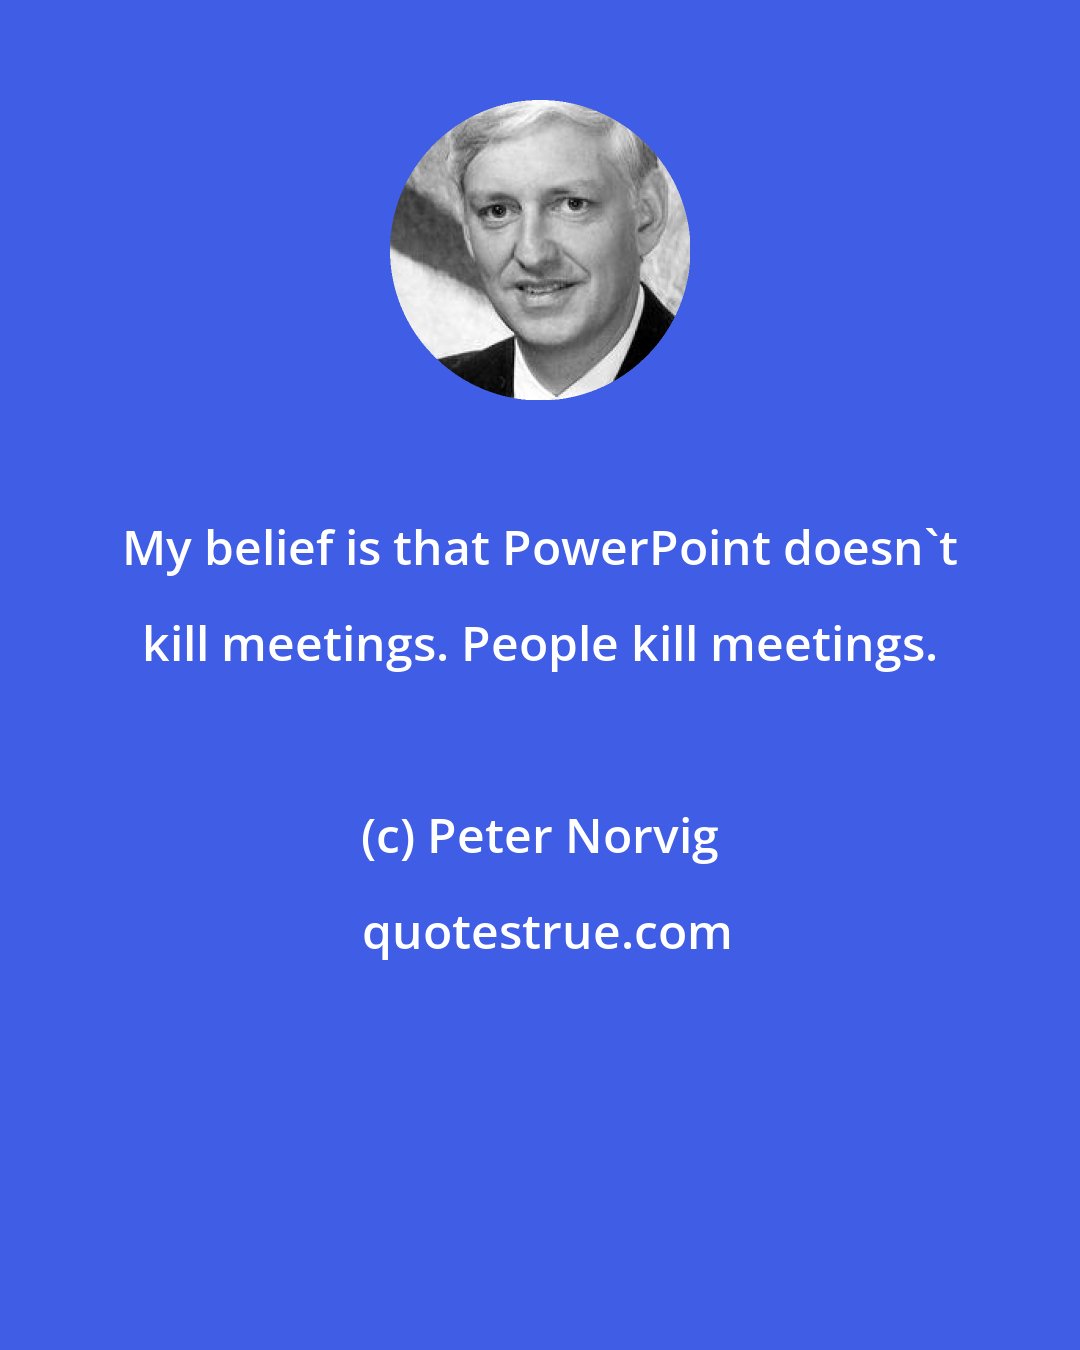 Peter Norvig: My belief is that PowerPoint doesn't kill meetings. People kill meetings.